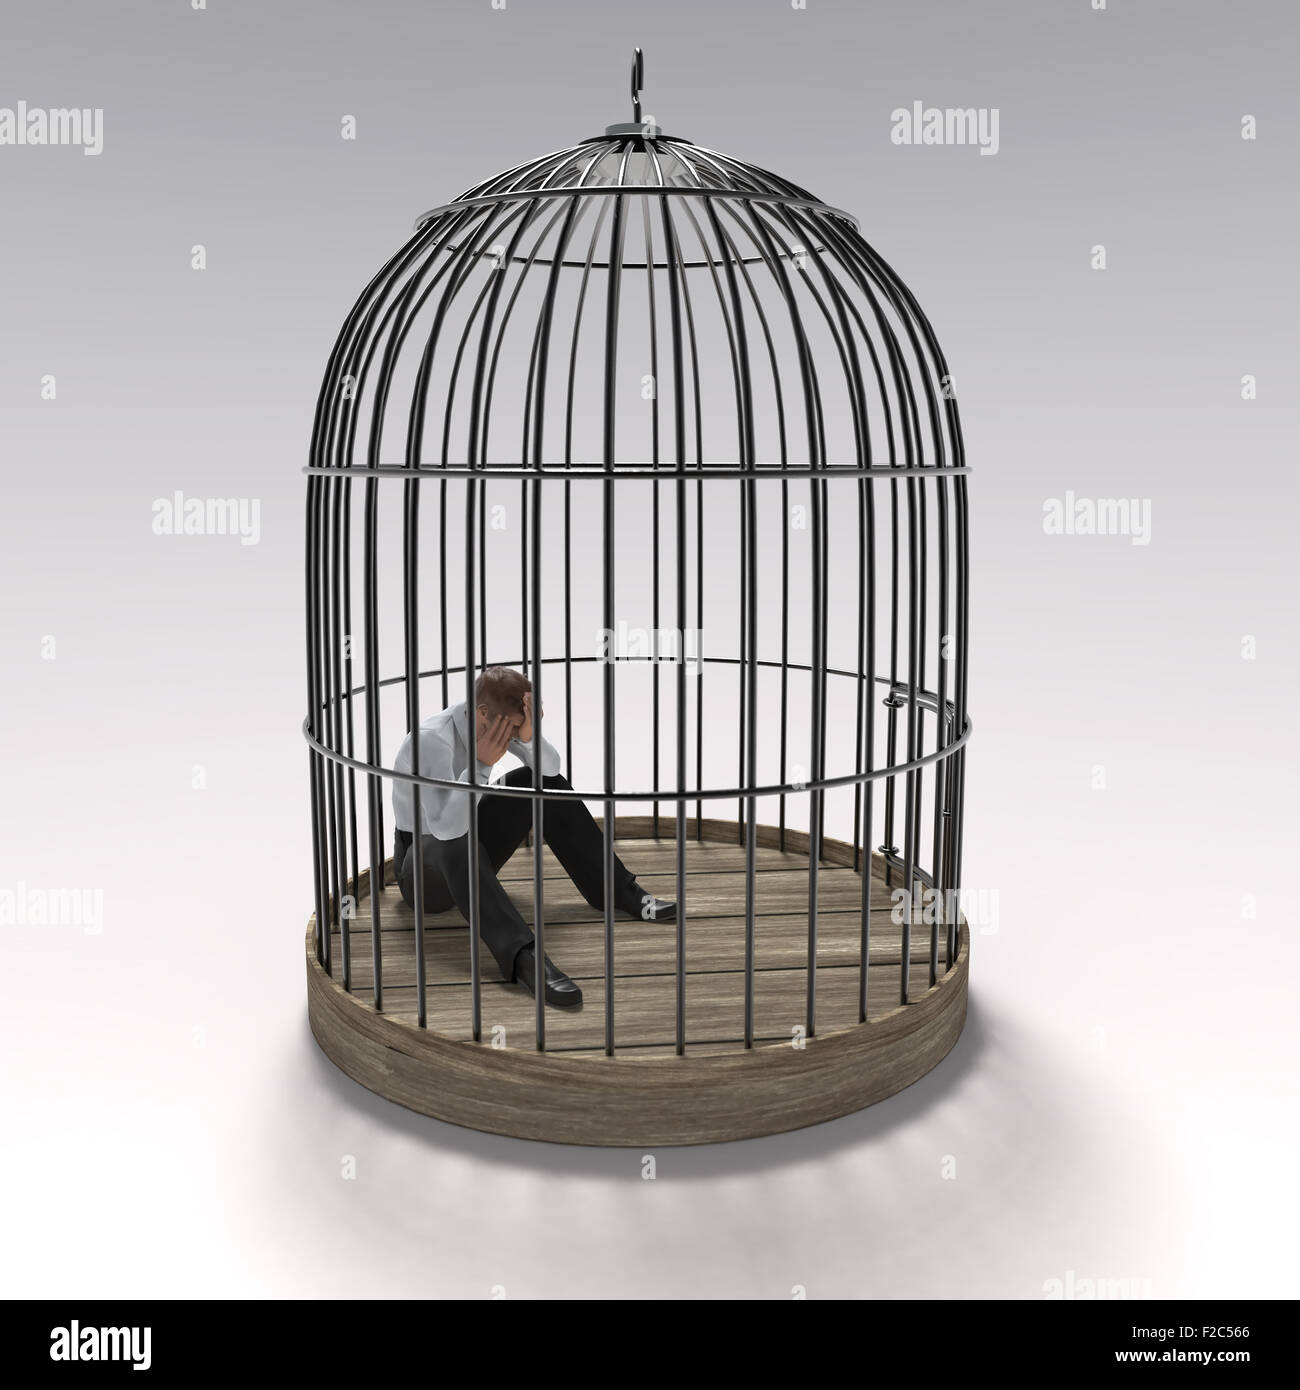 L'homme dans la cage Photo Stock - Alamy